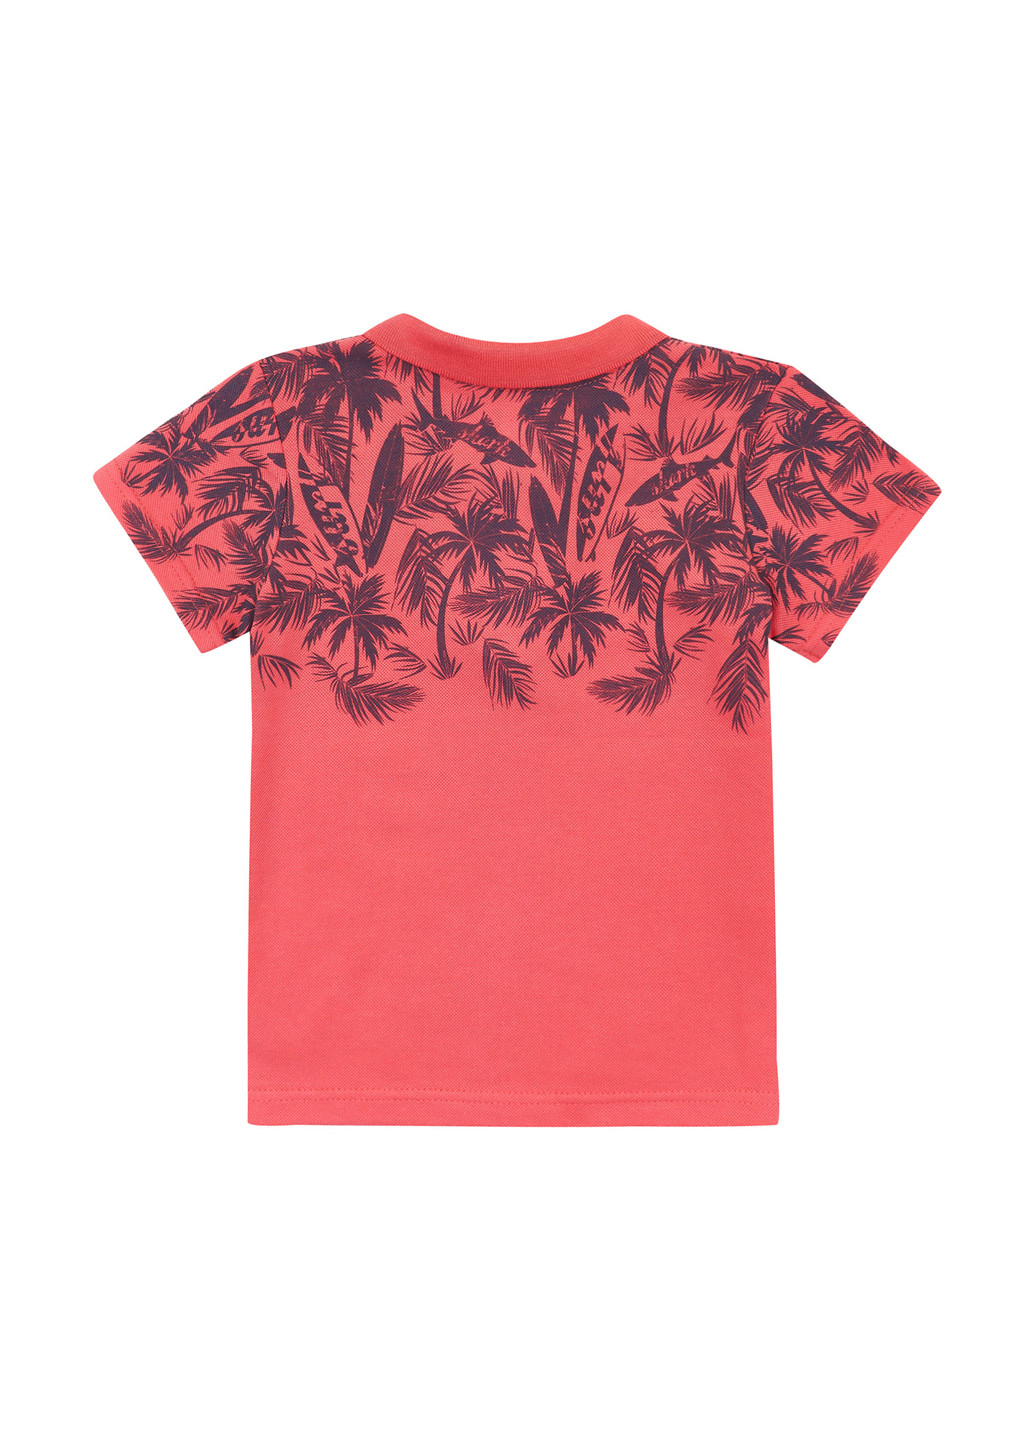 Коралловая детская футболка-поло для мальчика Z16 с рисунком